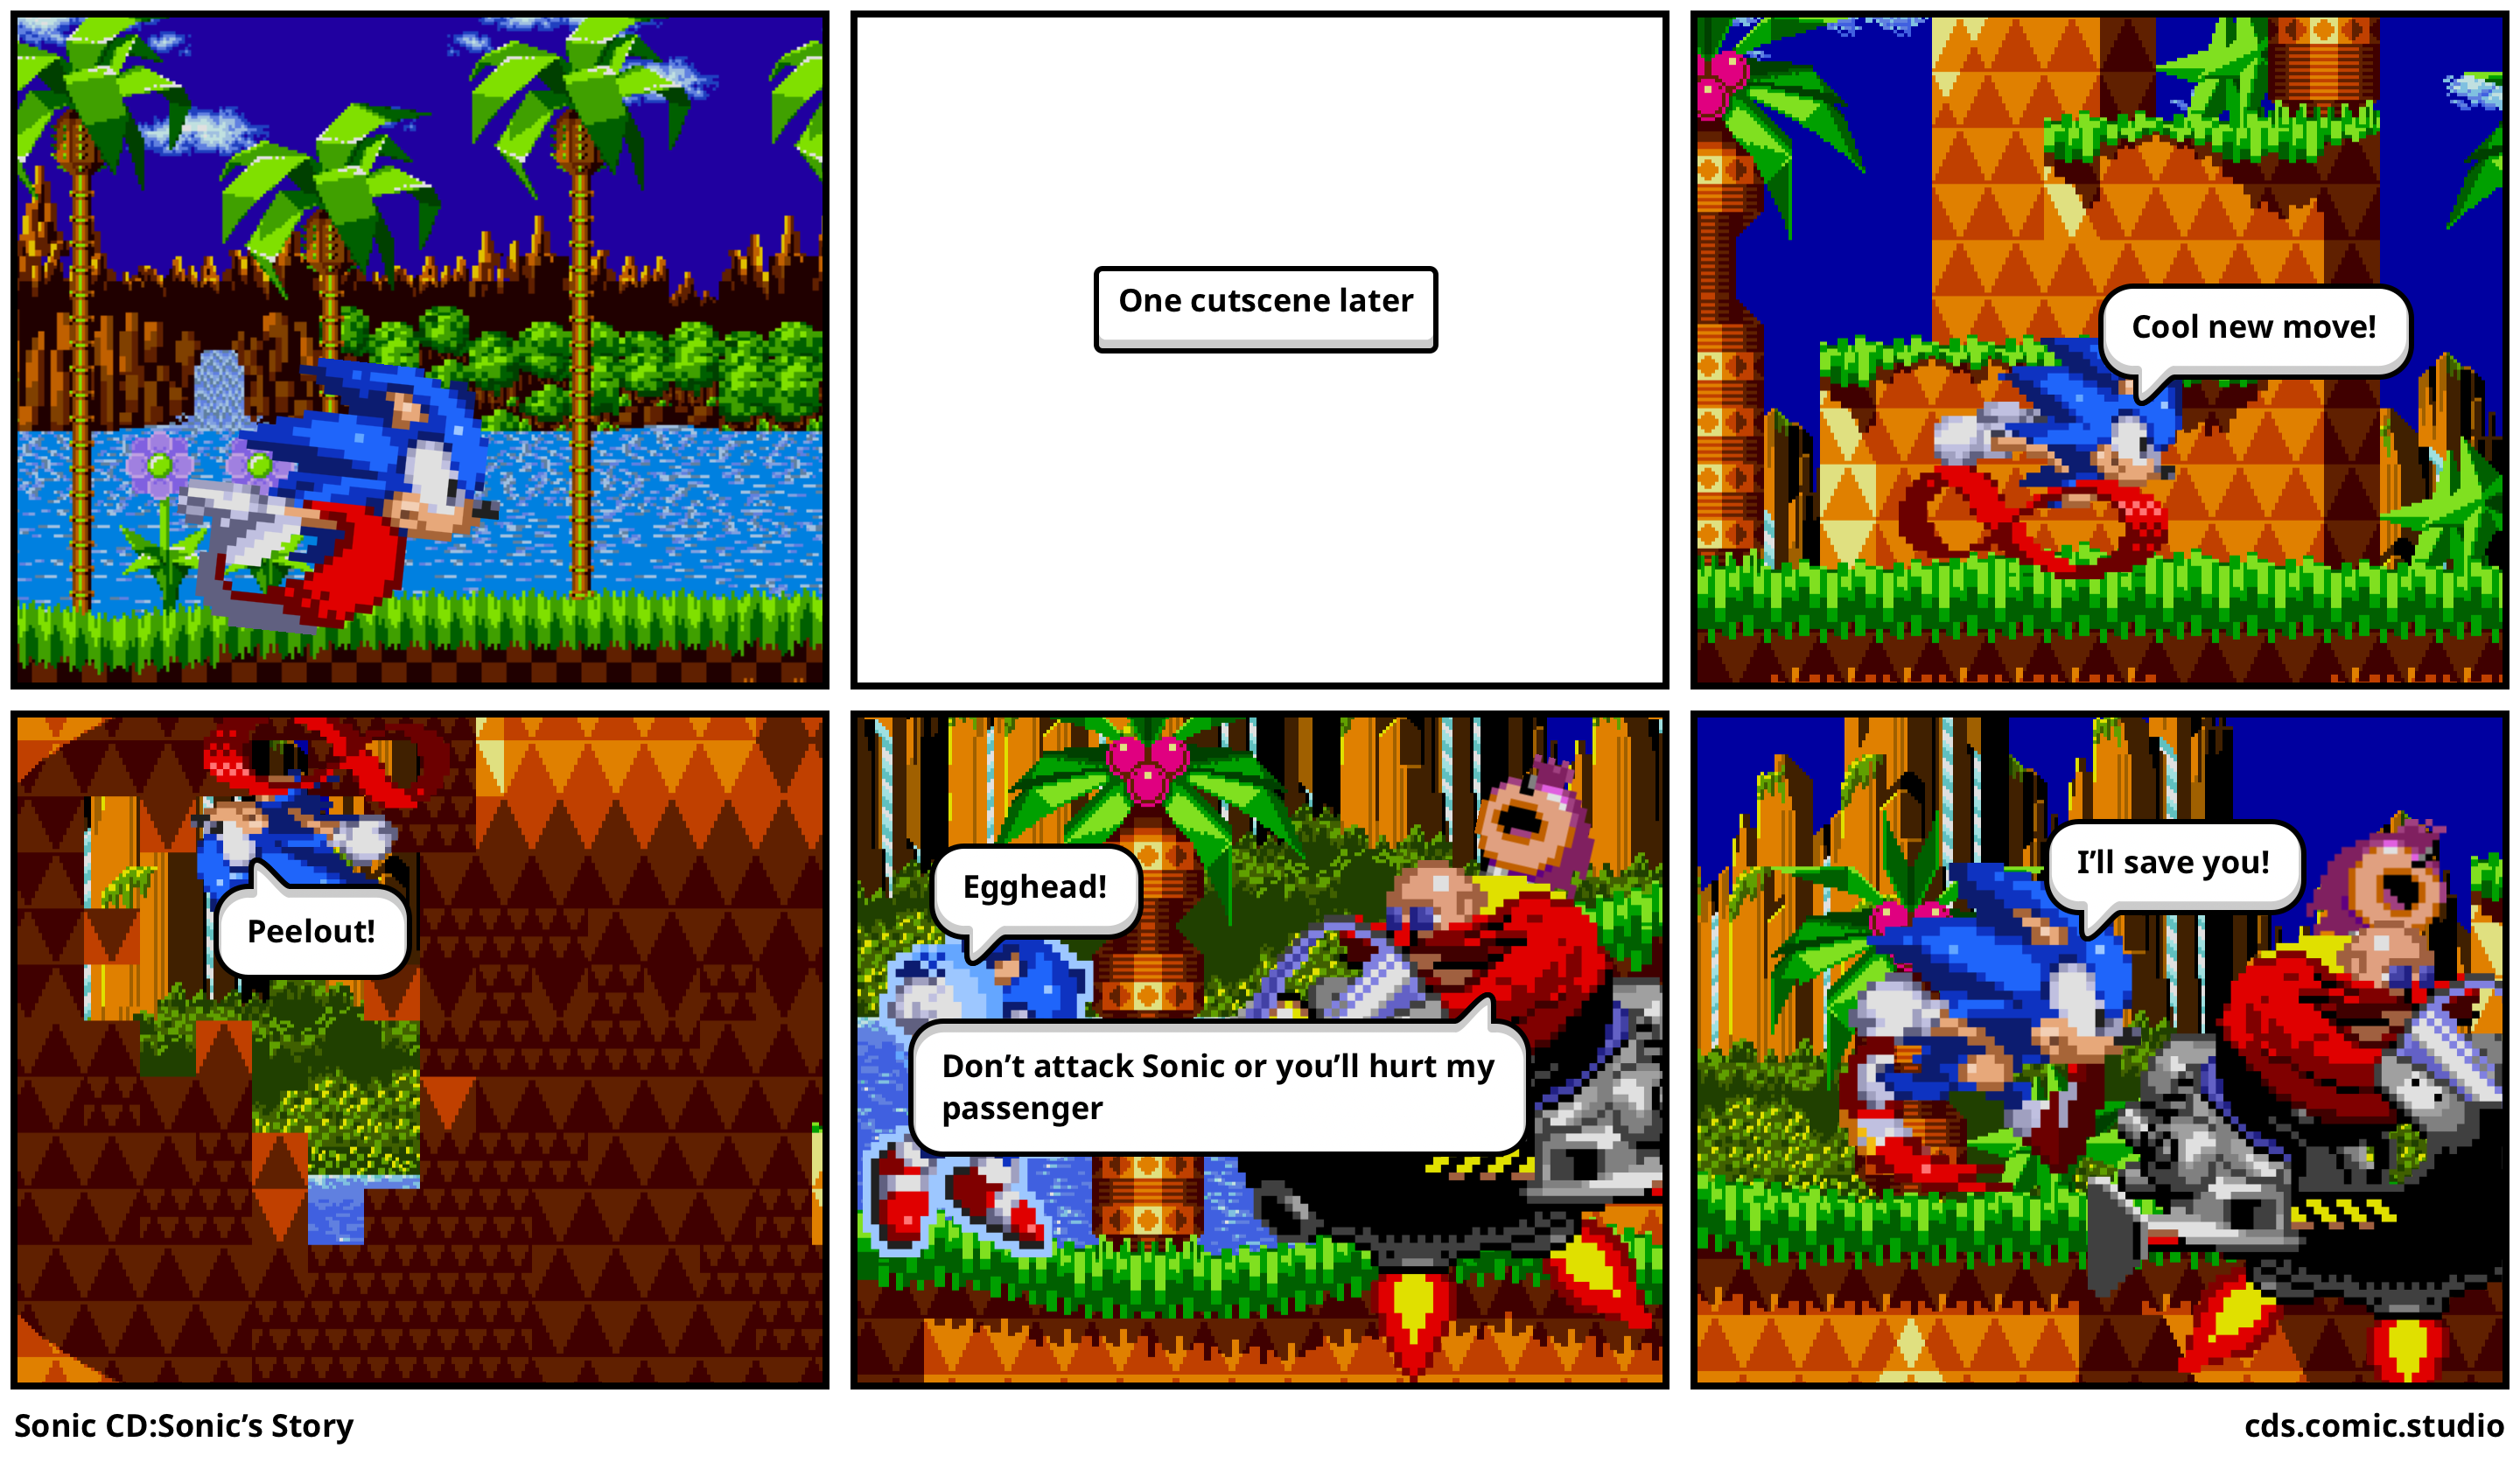 Sonic CD:Sonic’s Story